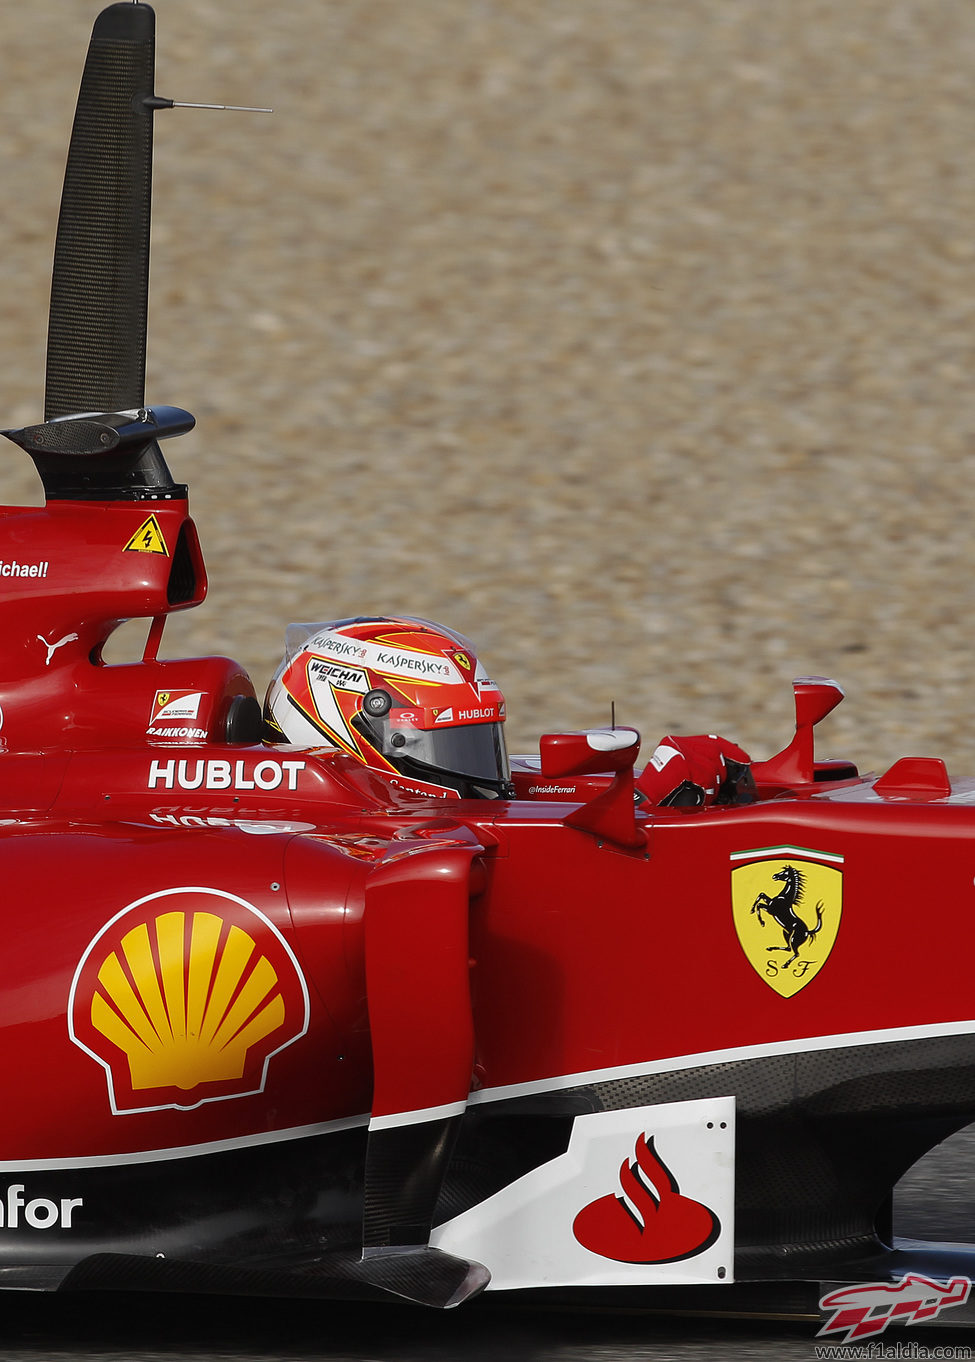 Visibles sensores para Ferrari